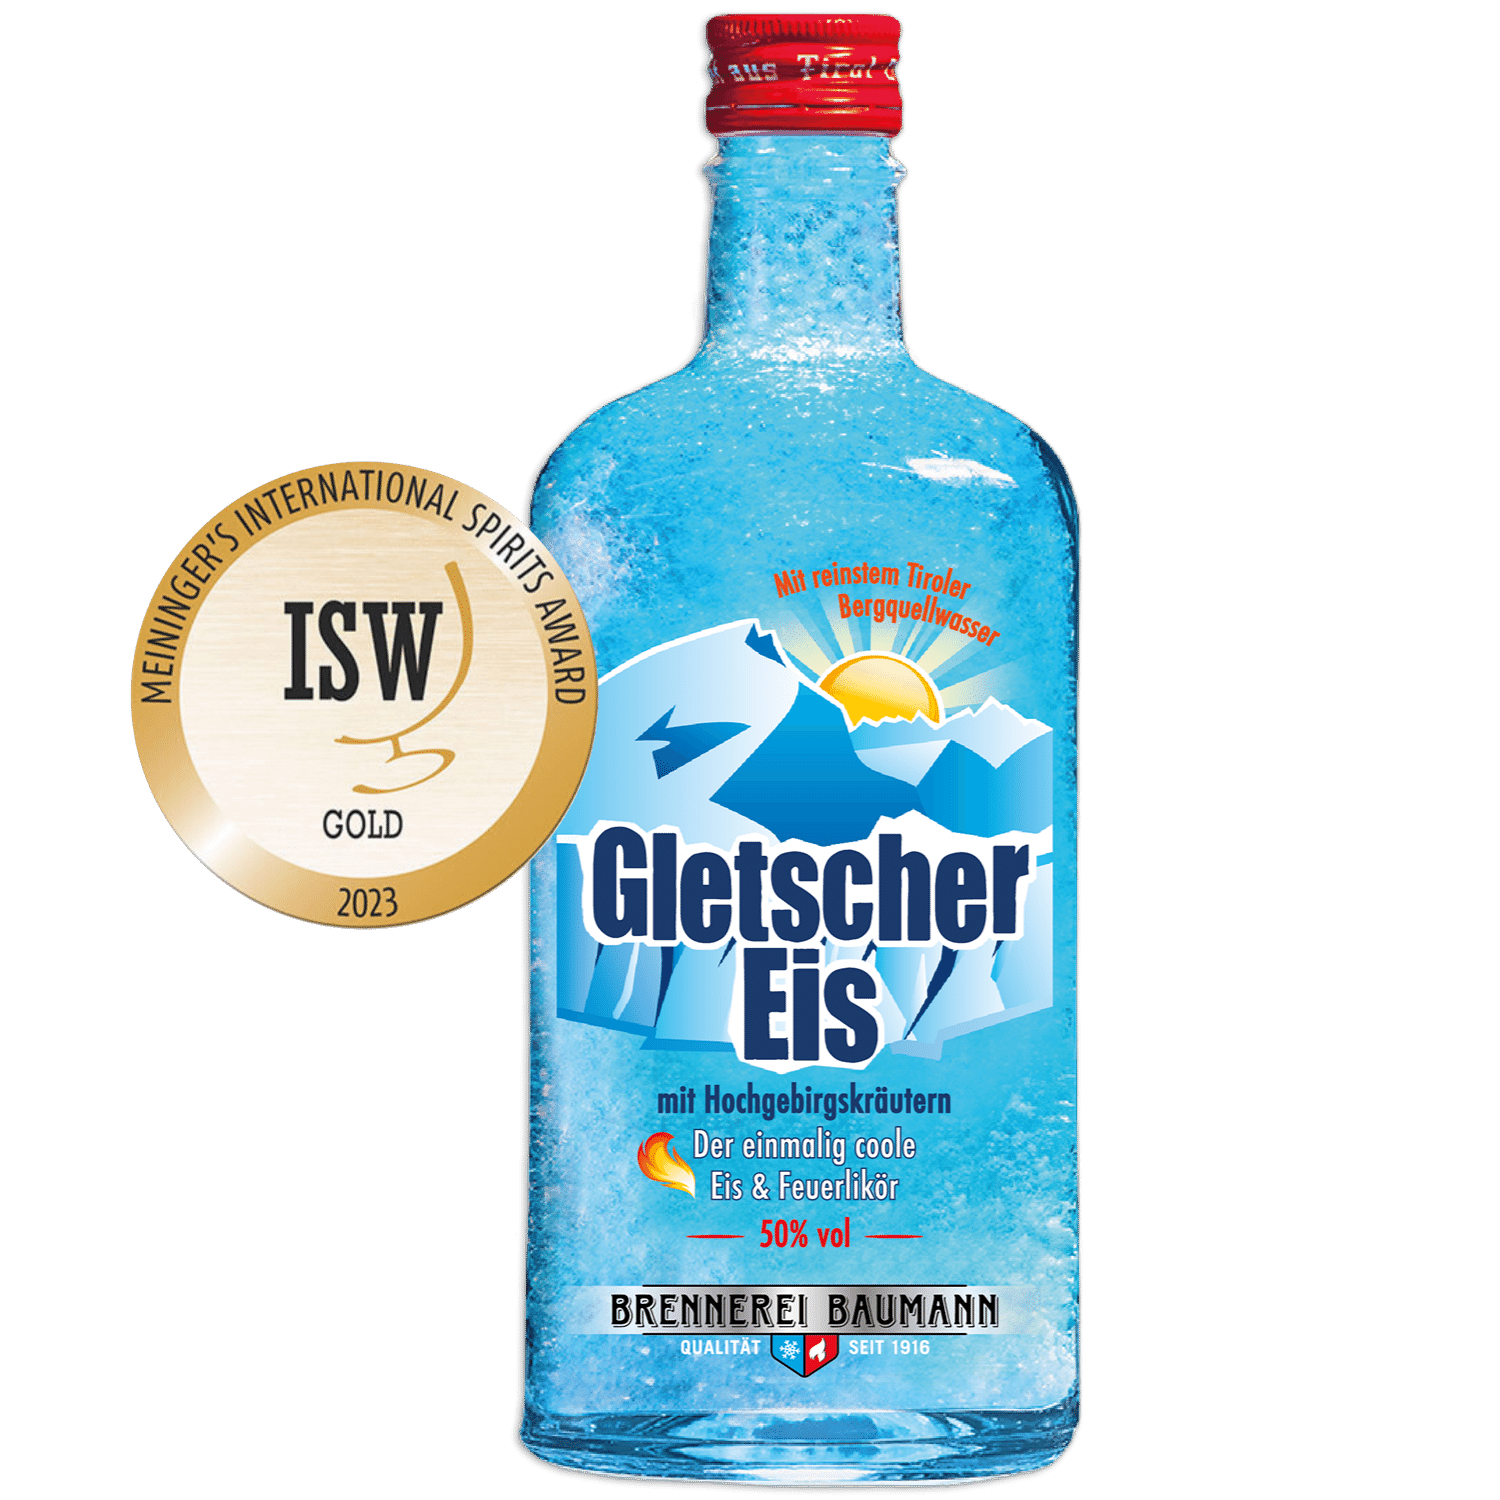 Gold award-winning Gletschereis fire liqueur from the Tyrolean distillery Baumann in a noble bottle